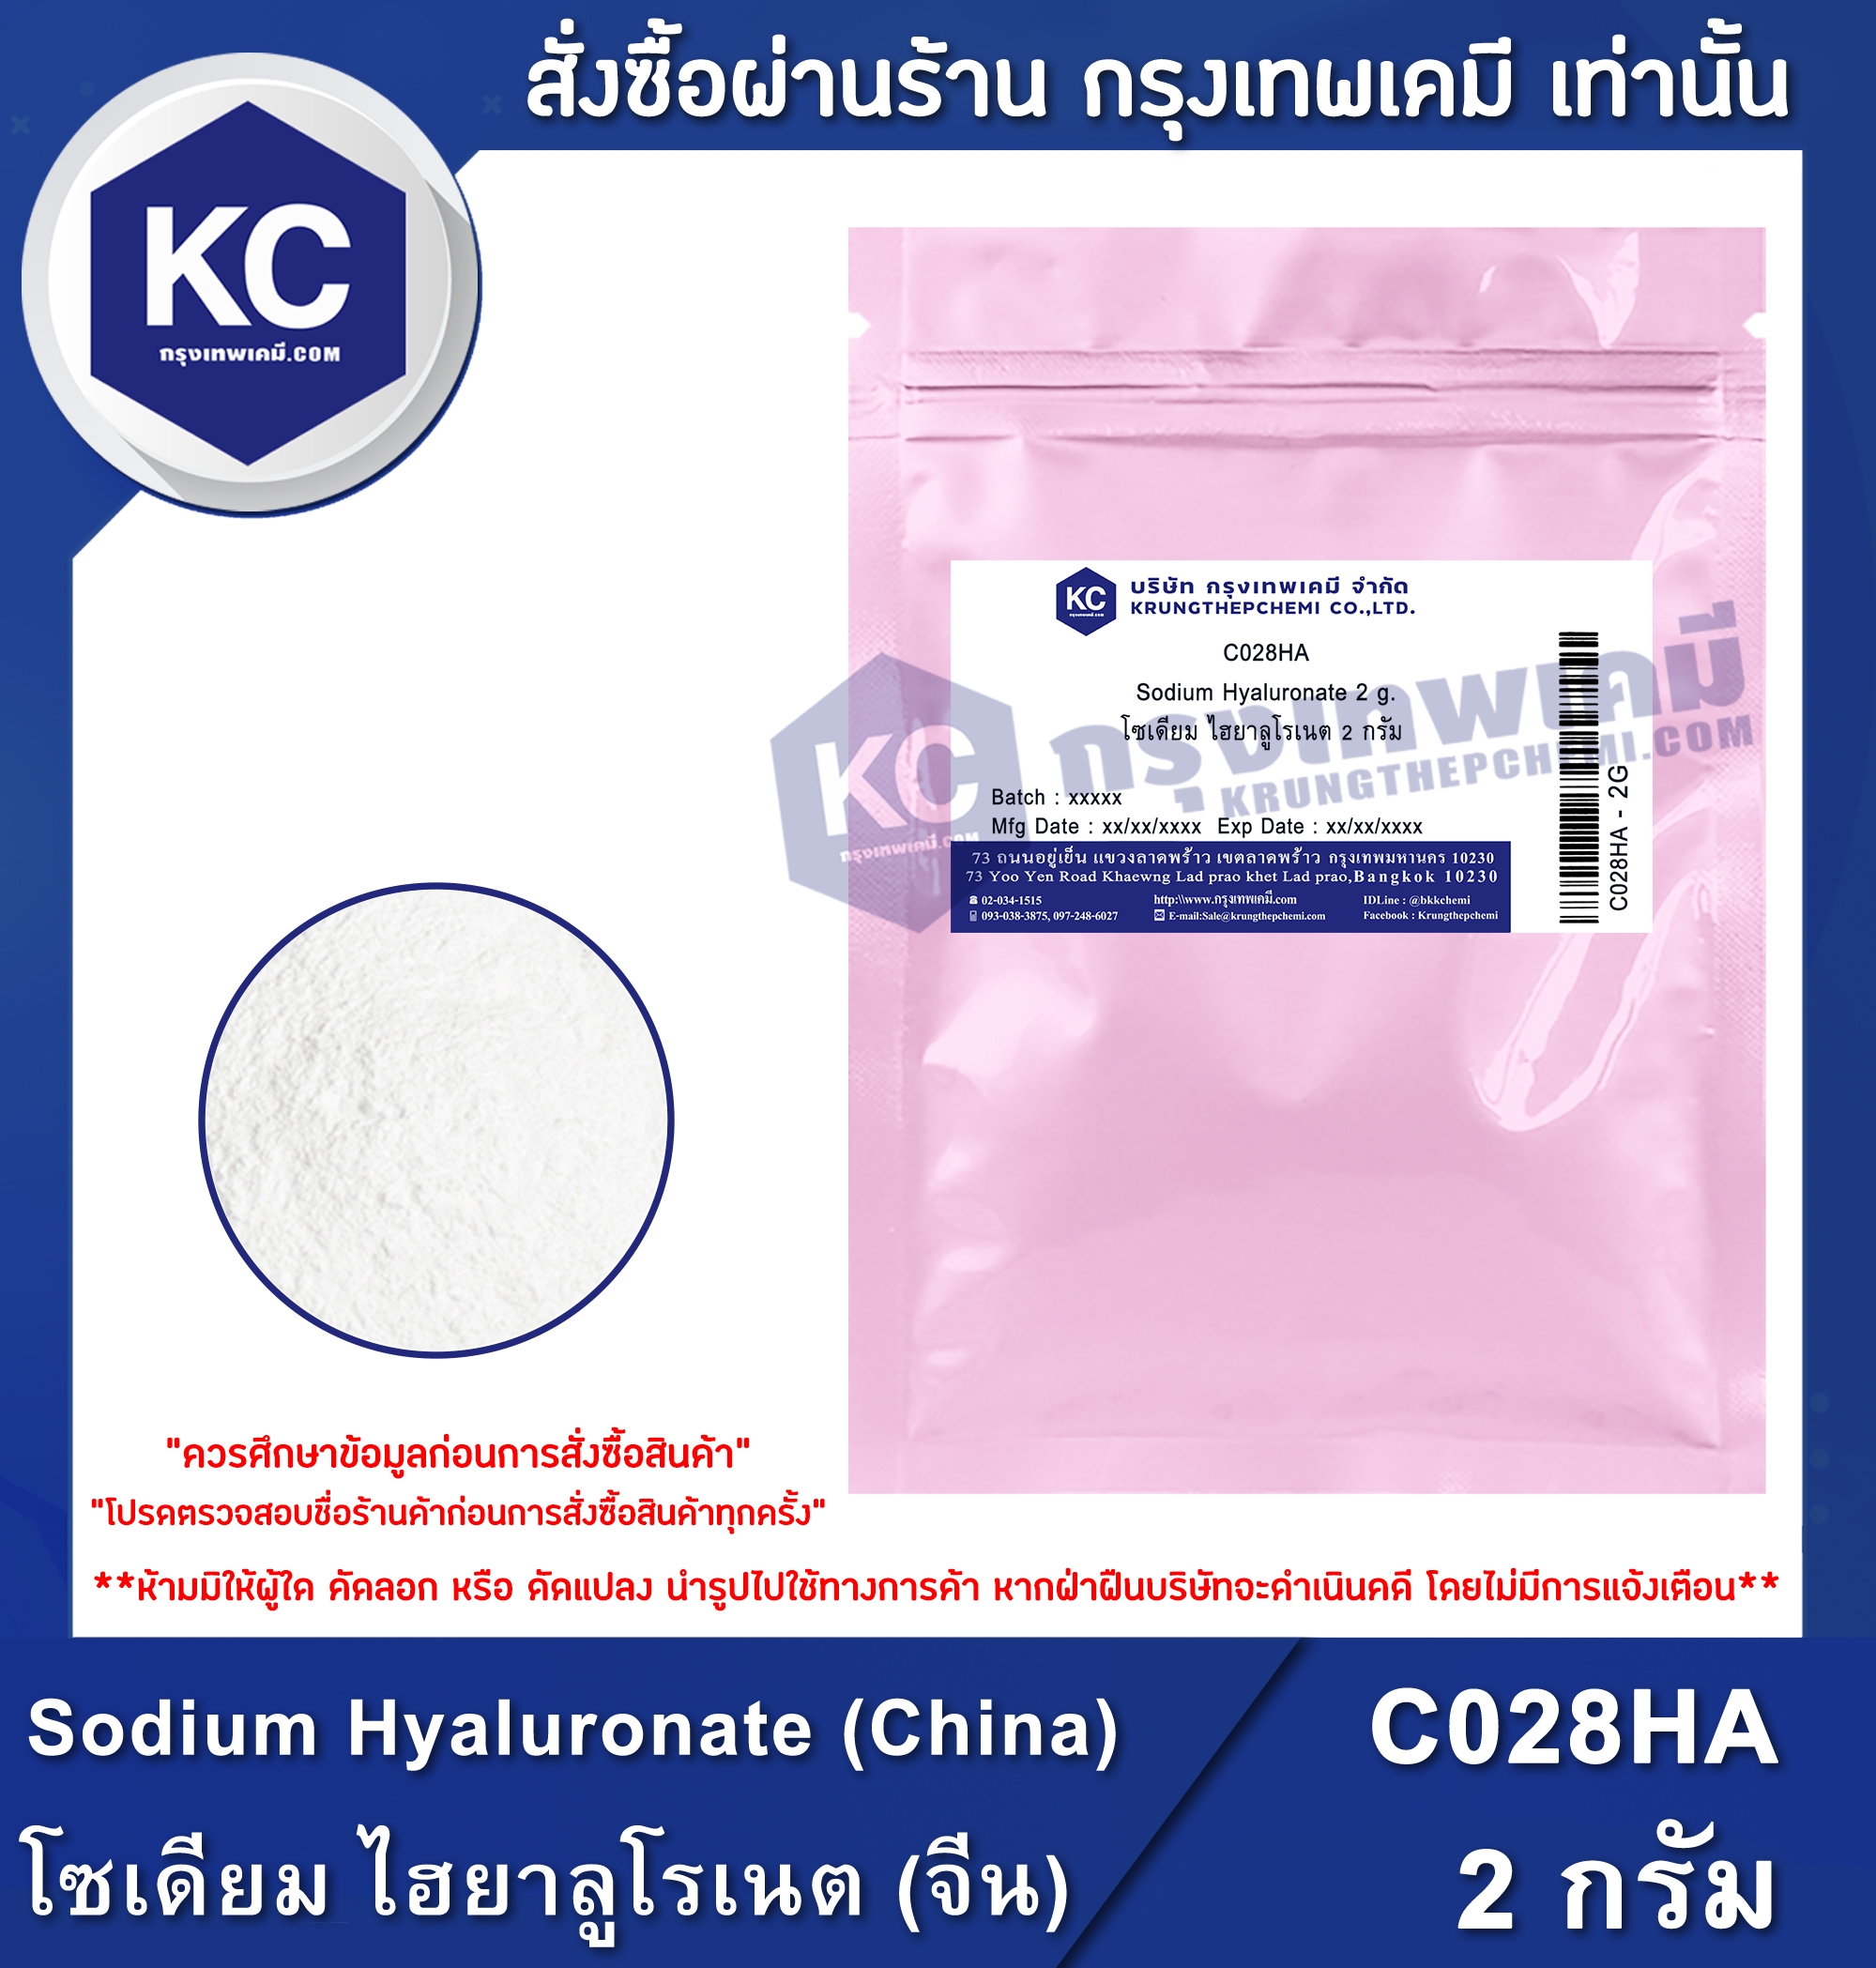 ราคา ไฮยาลูโรนิค เอซิค / hyaluronic acid (Cosmatic grade) (C028HA)